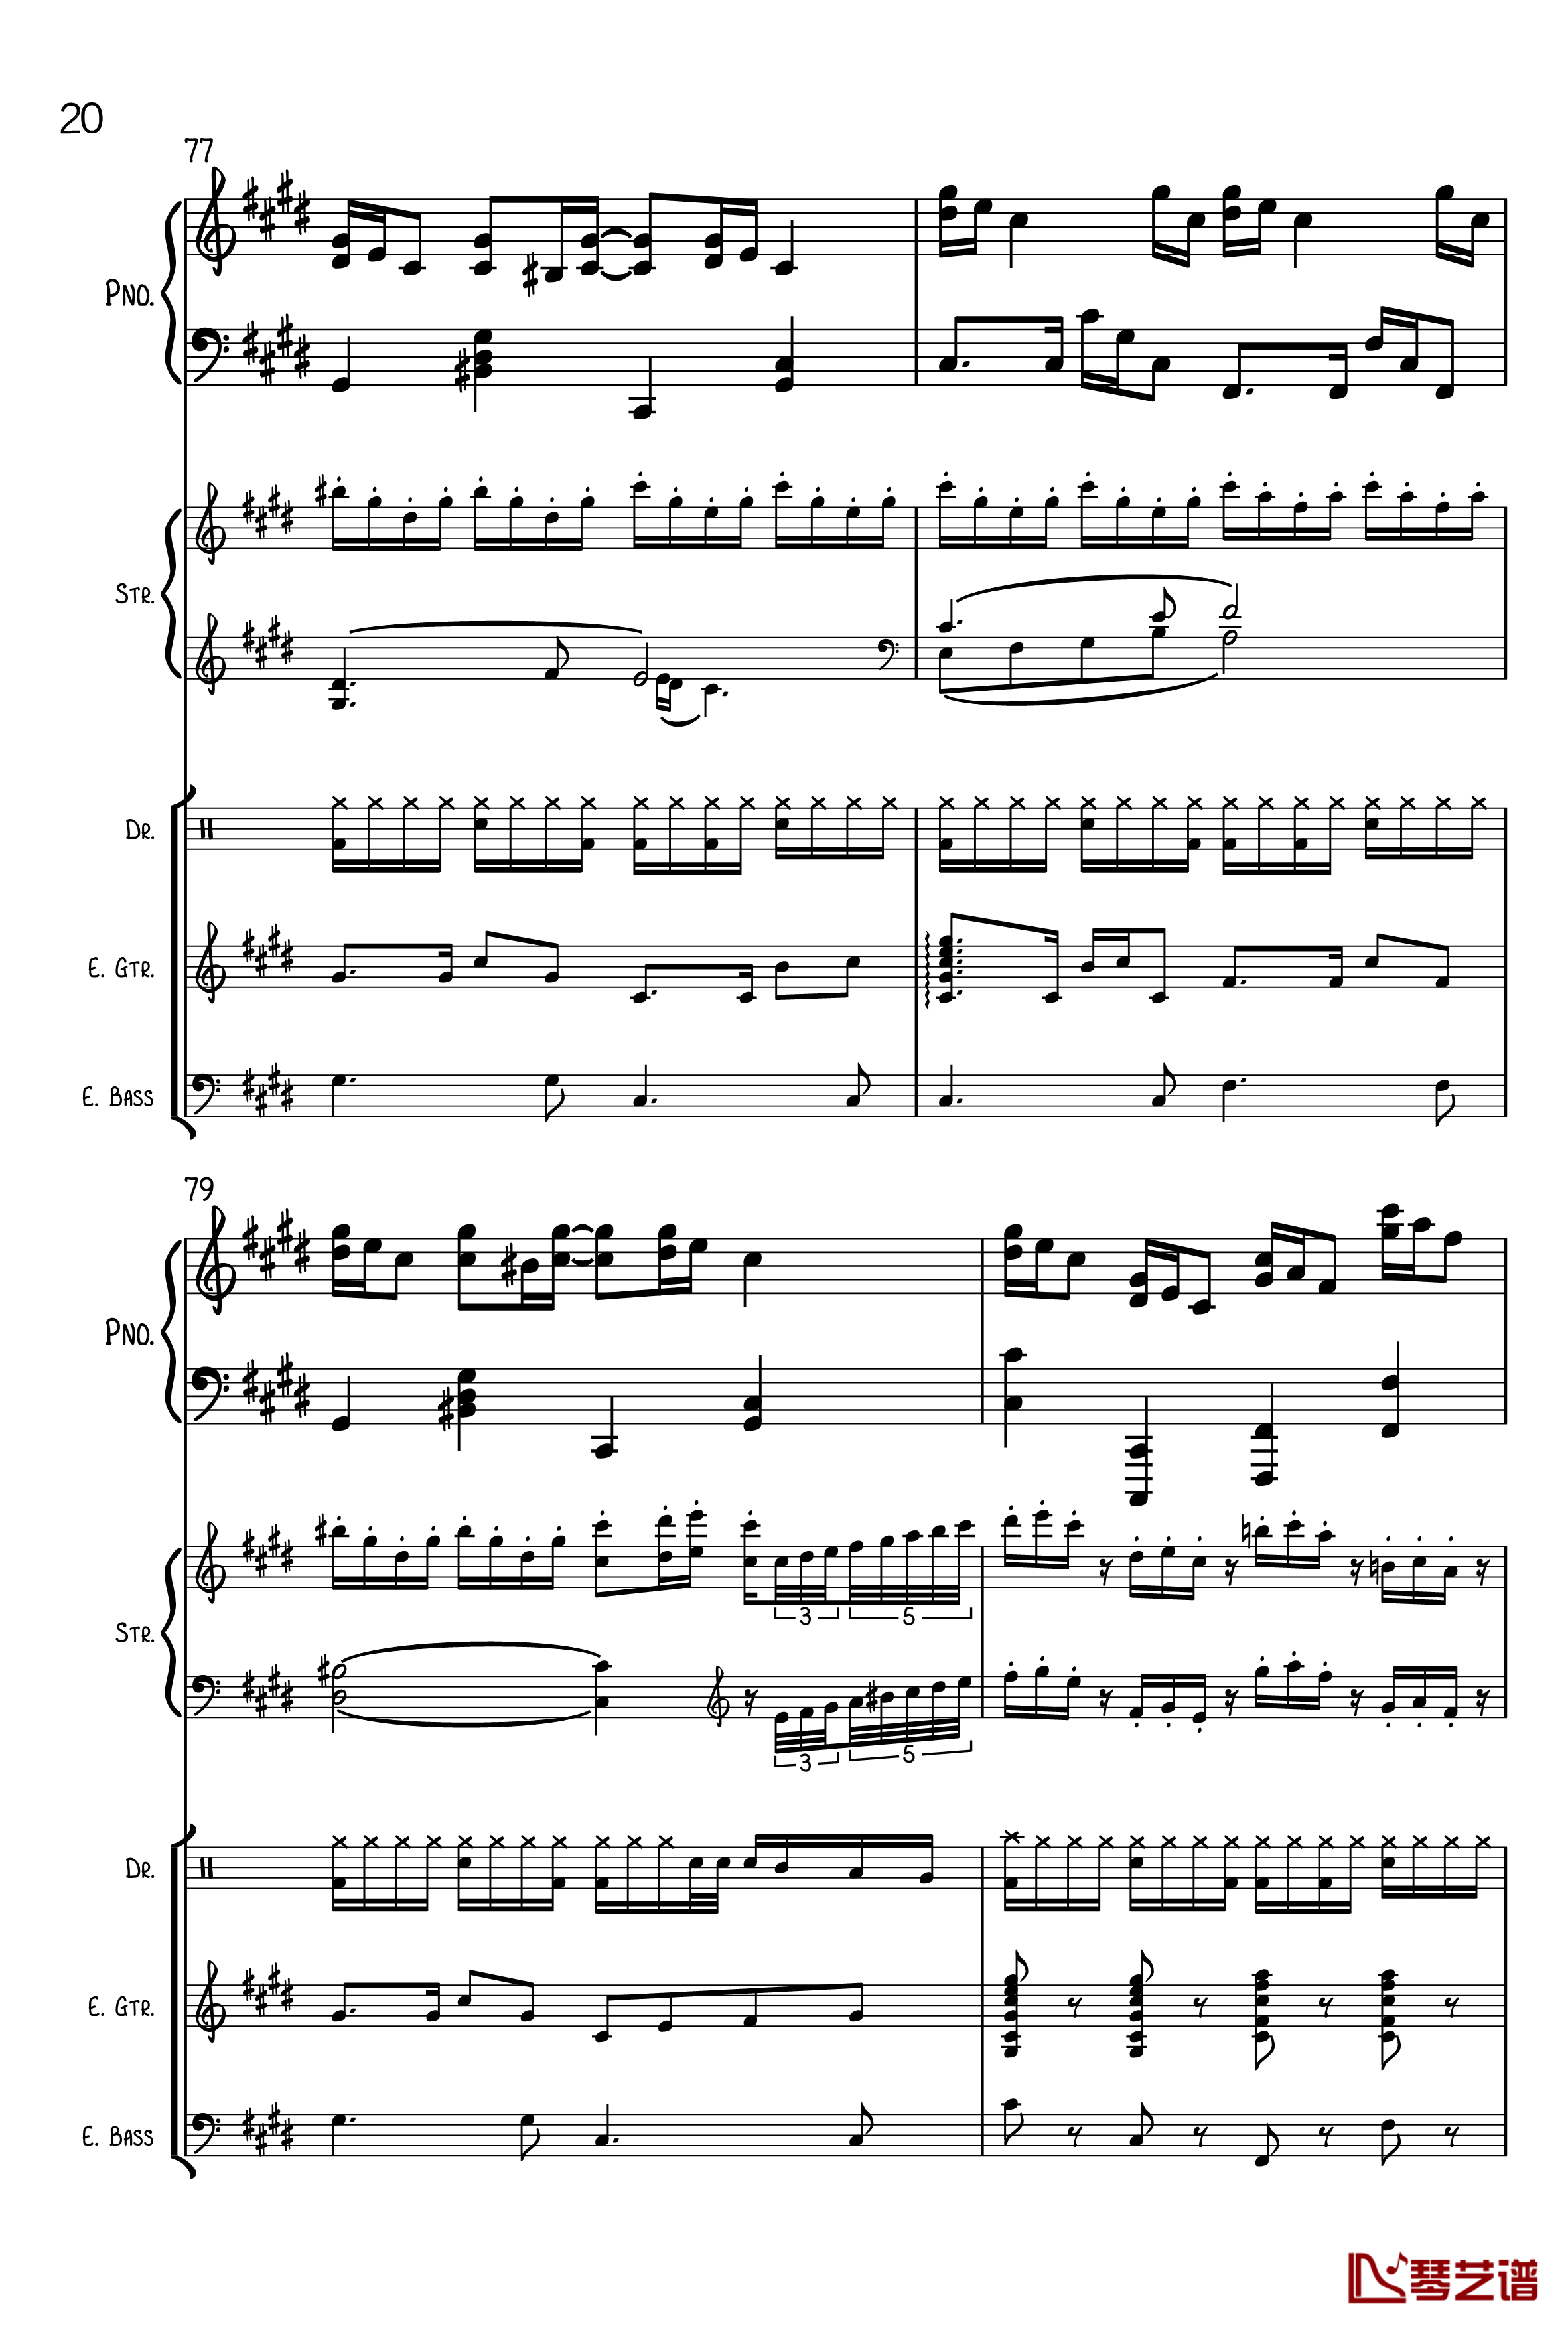 克罗地亚狂想曲钢琴谱-总谱-马克西姆-Maksim·Mrvica20